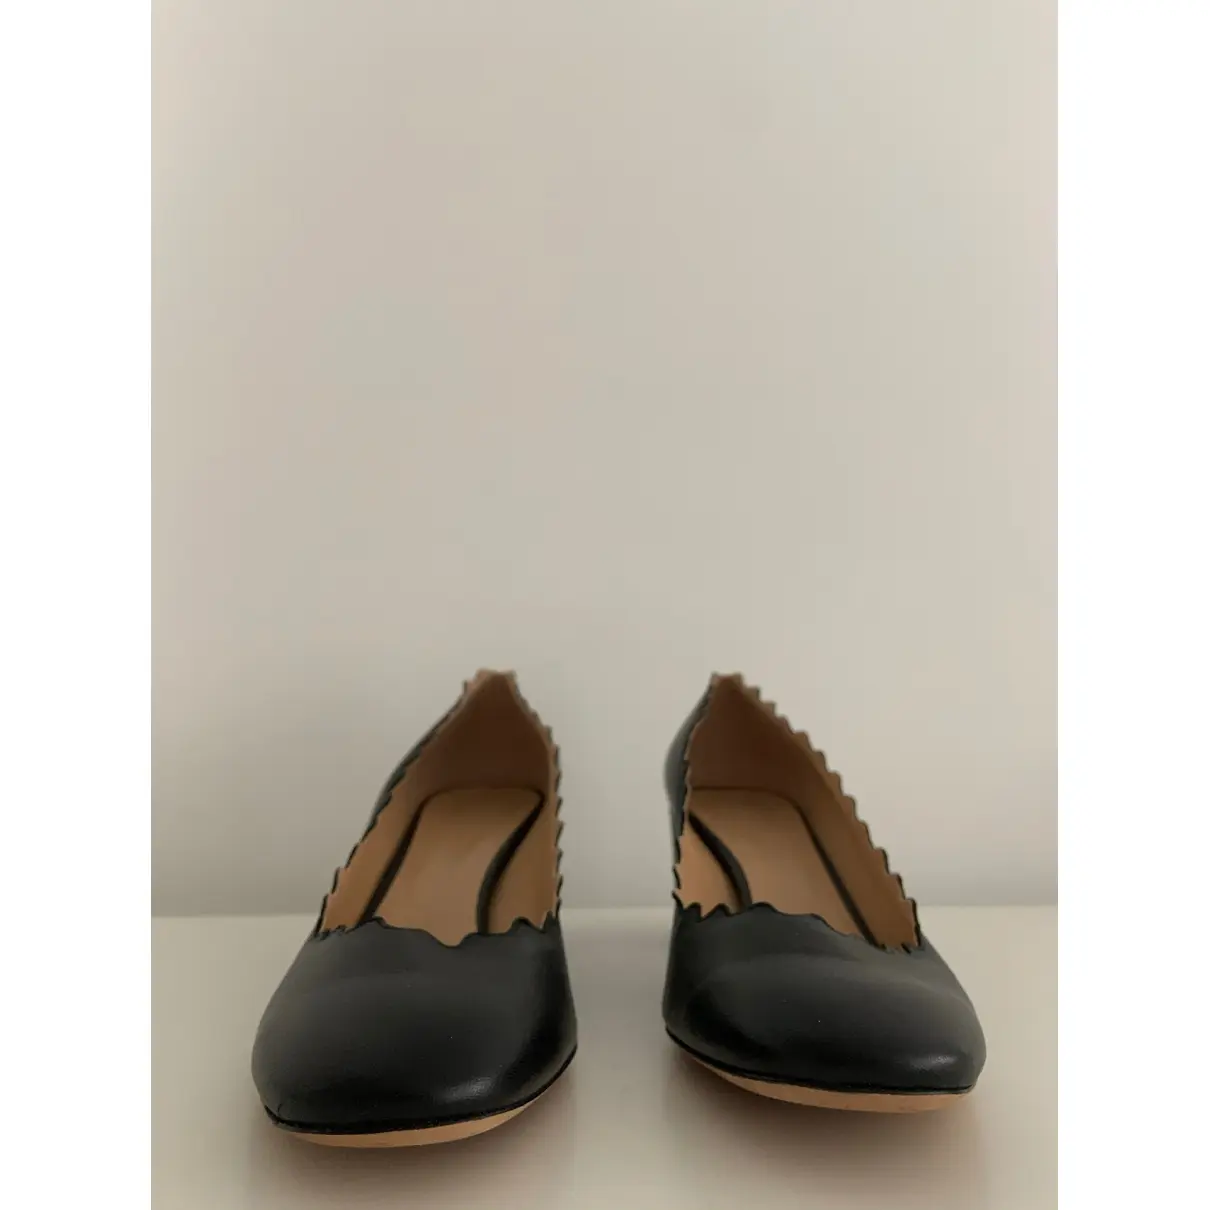 Buy Chloé Lauren leather heels online